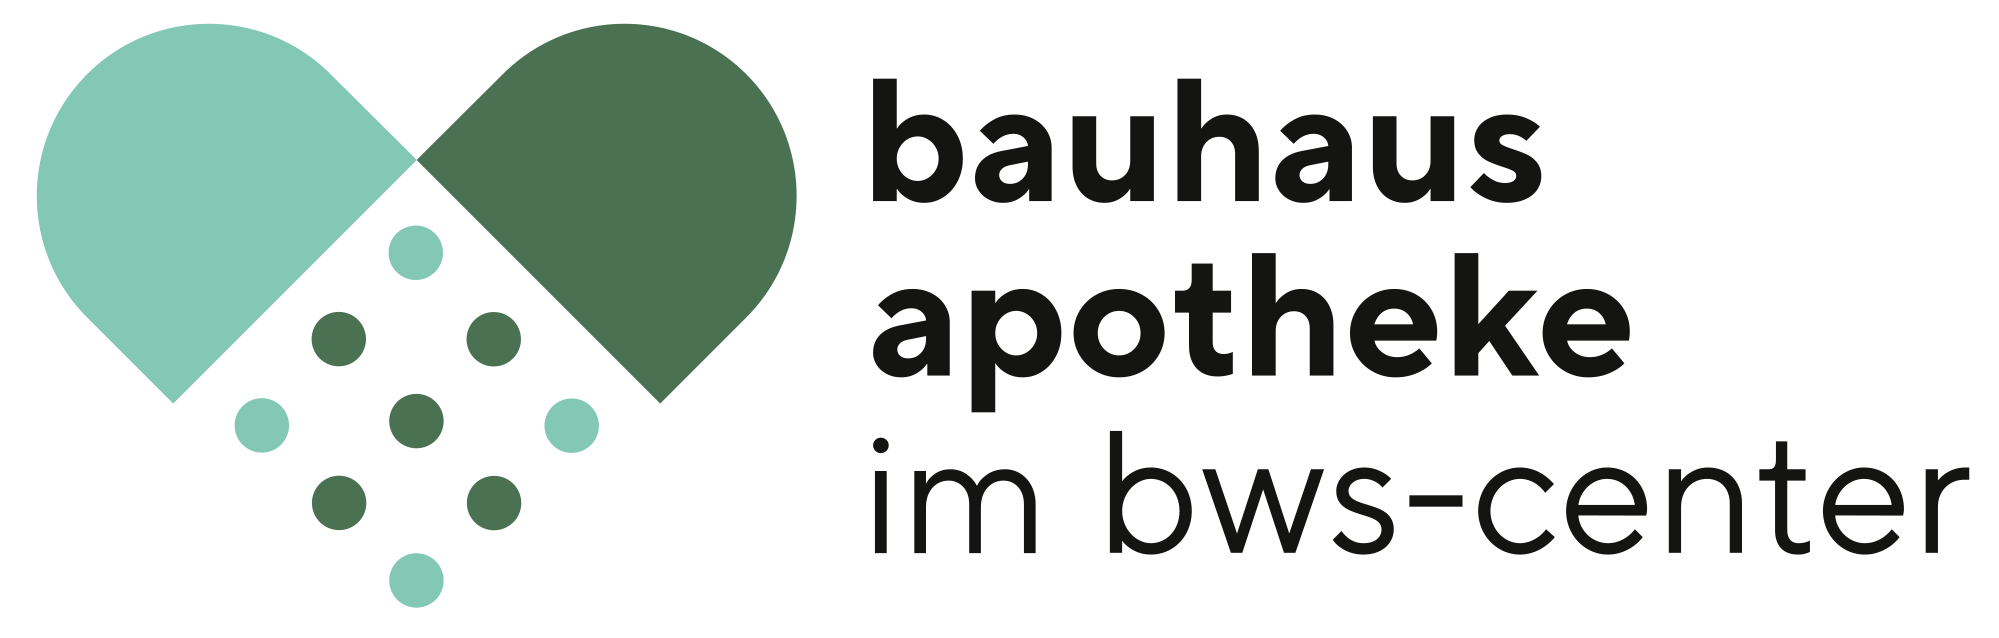 Bauhaus Apotheke im BWS-Center